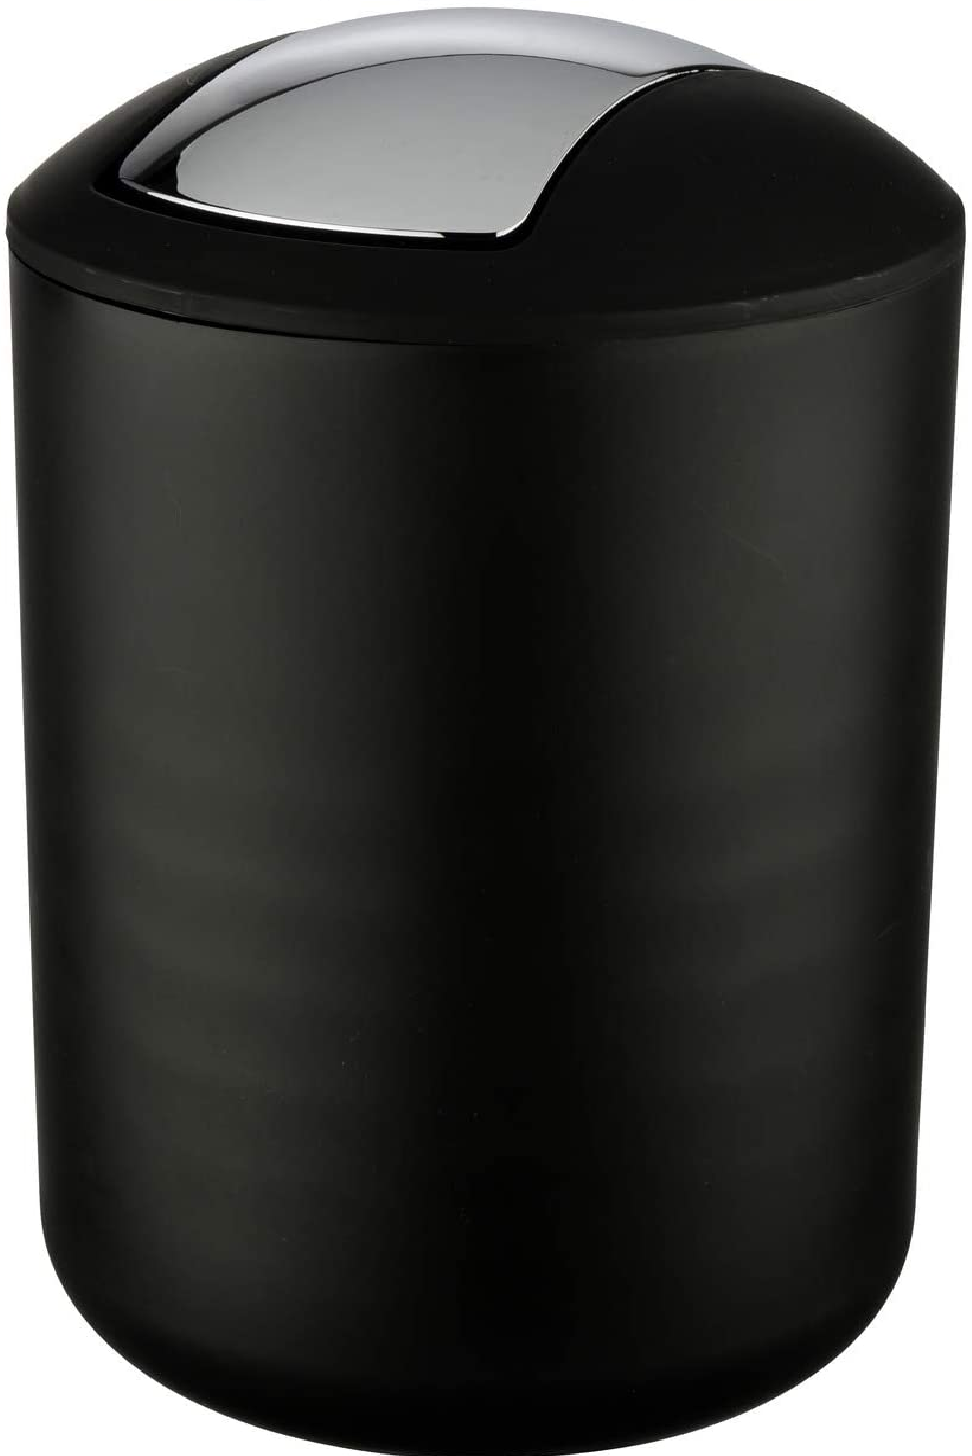 Schwingdeckeleimer Brasil Schwarz L - Kosmetikeimer, absolut bruchsicher Fassungsvermögen: 6.5 l, Kunststoff (TPE), 19.5 x 31 x 19.5 cm, Schwarz